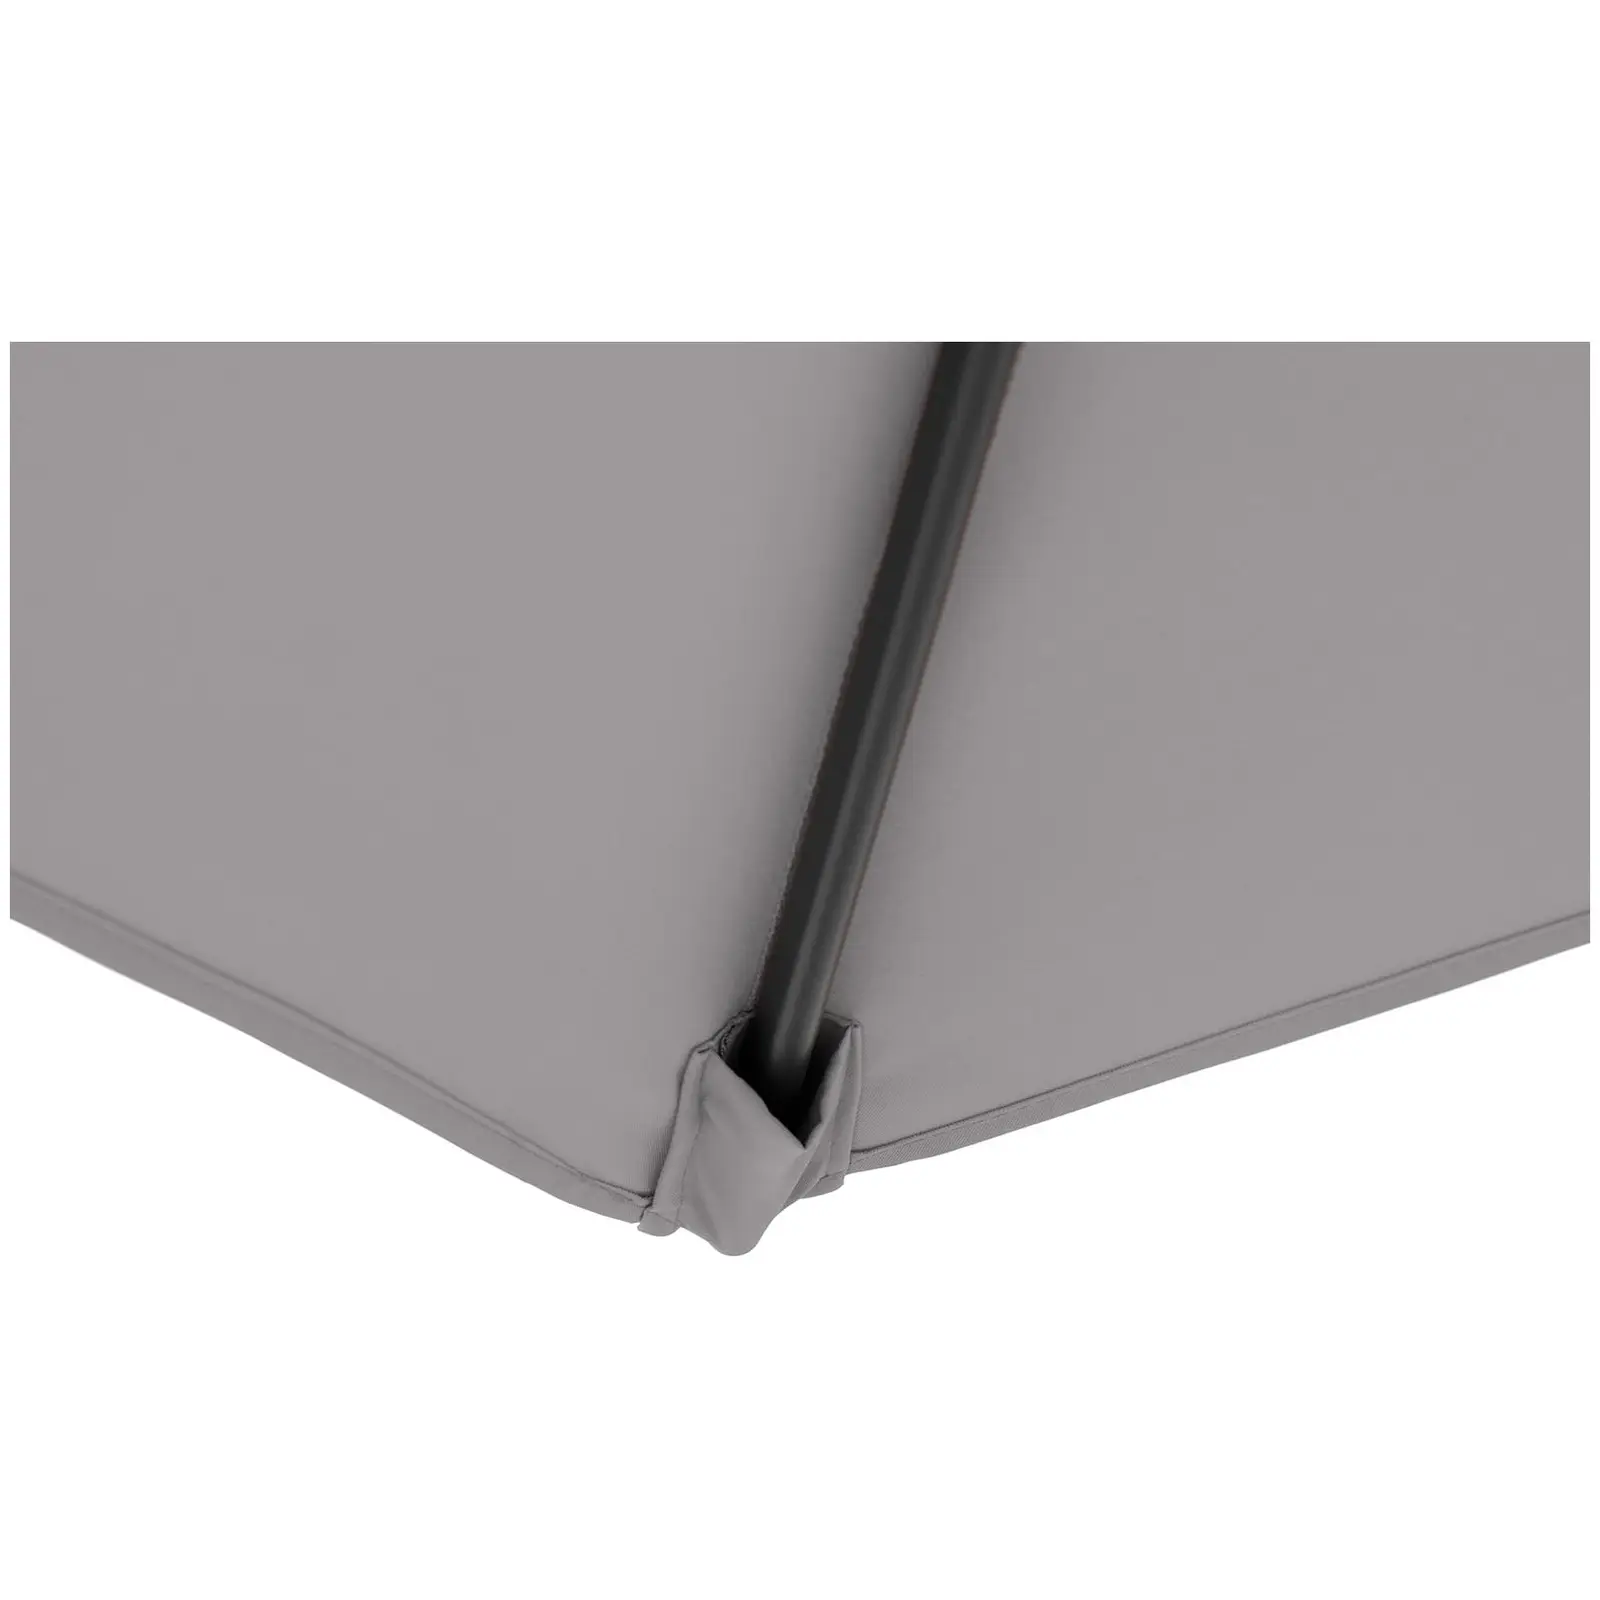 B-varer Hengeparasoll - mørkegrå - rektangulær - 250 x 250 cm - kan skråstilles